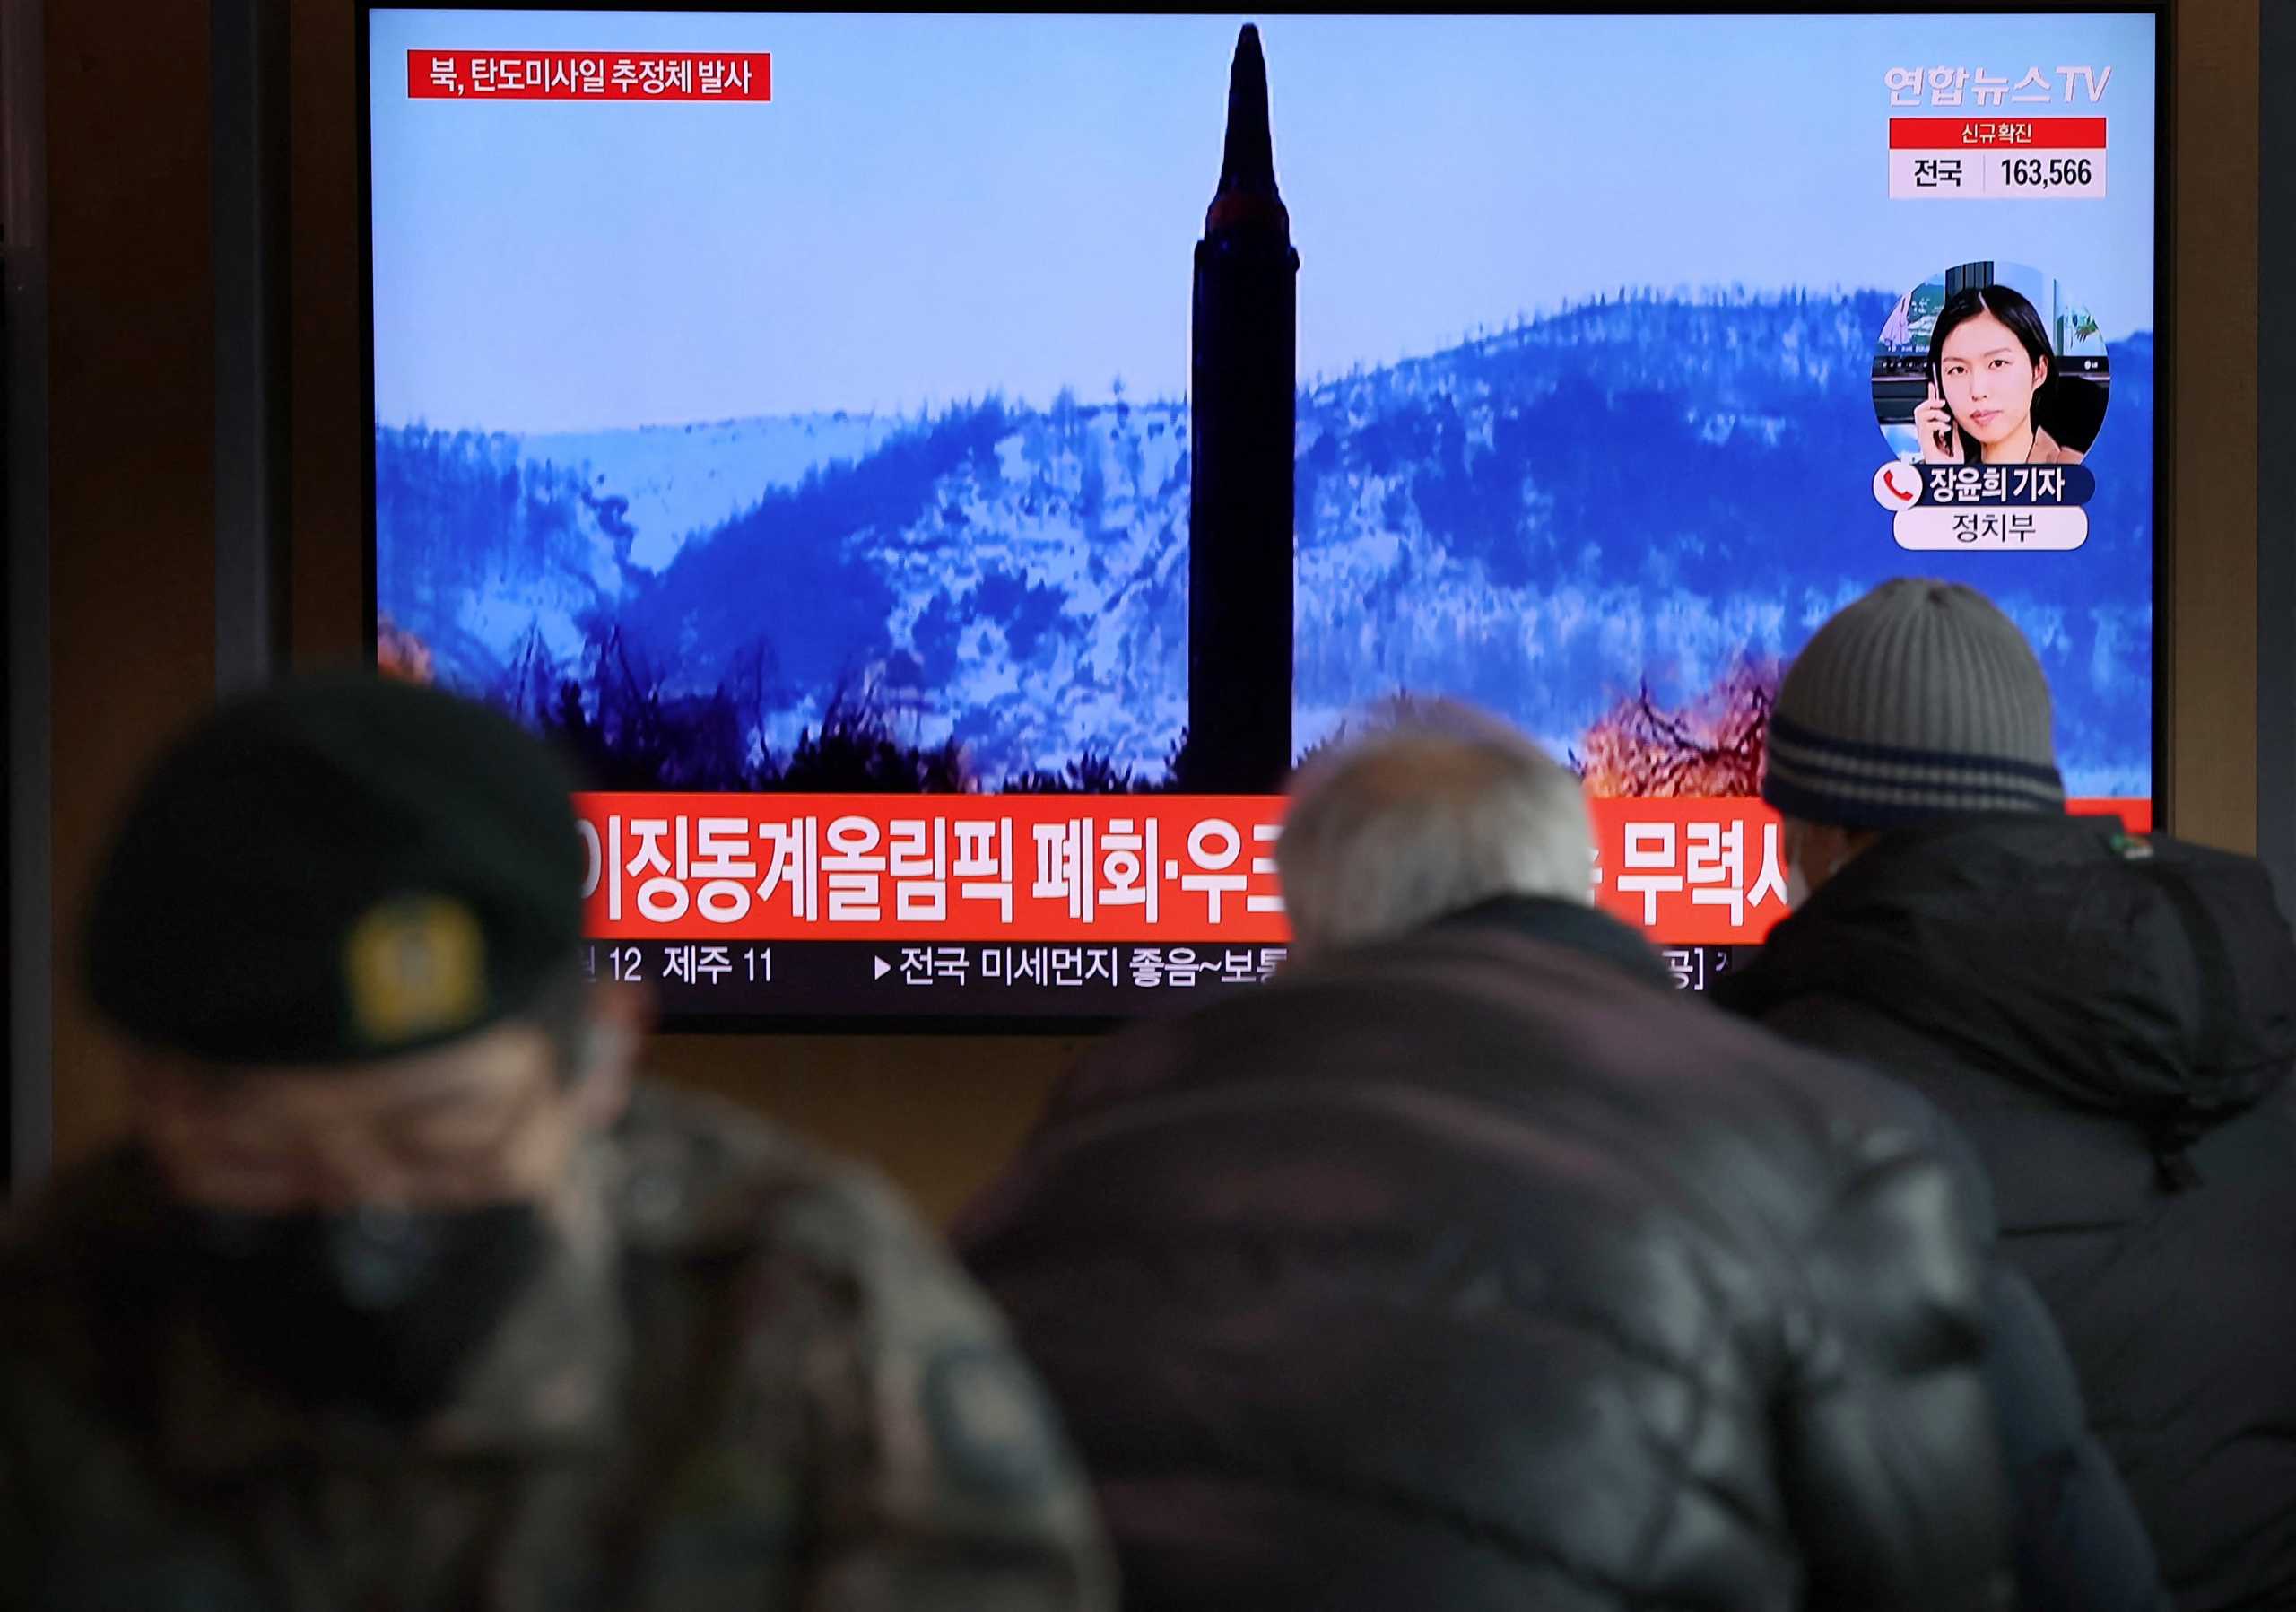 Νότια Κορέα: Διηπειρωτικός ο πύραυλος που εκτοξεύτηκε από την Πιονγκγιάνγκ – Παραβιάστηκε το μορατόριουμ